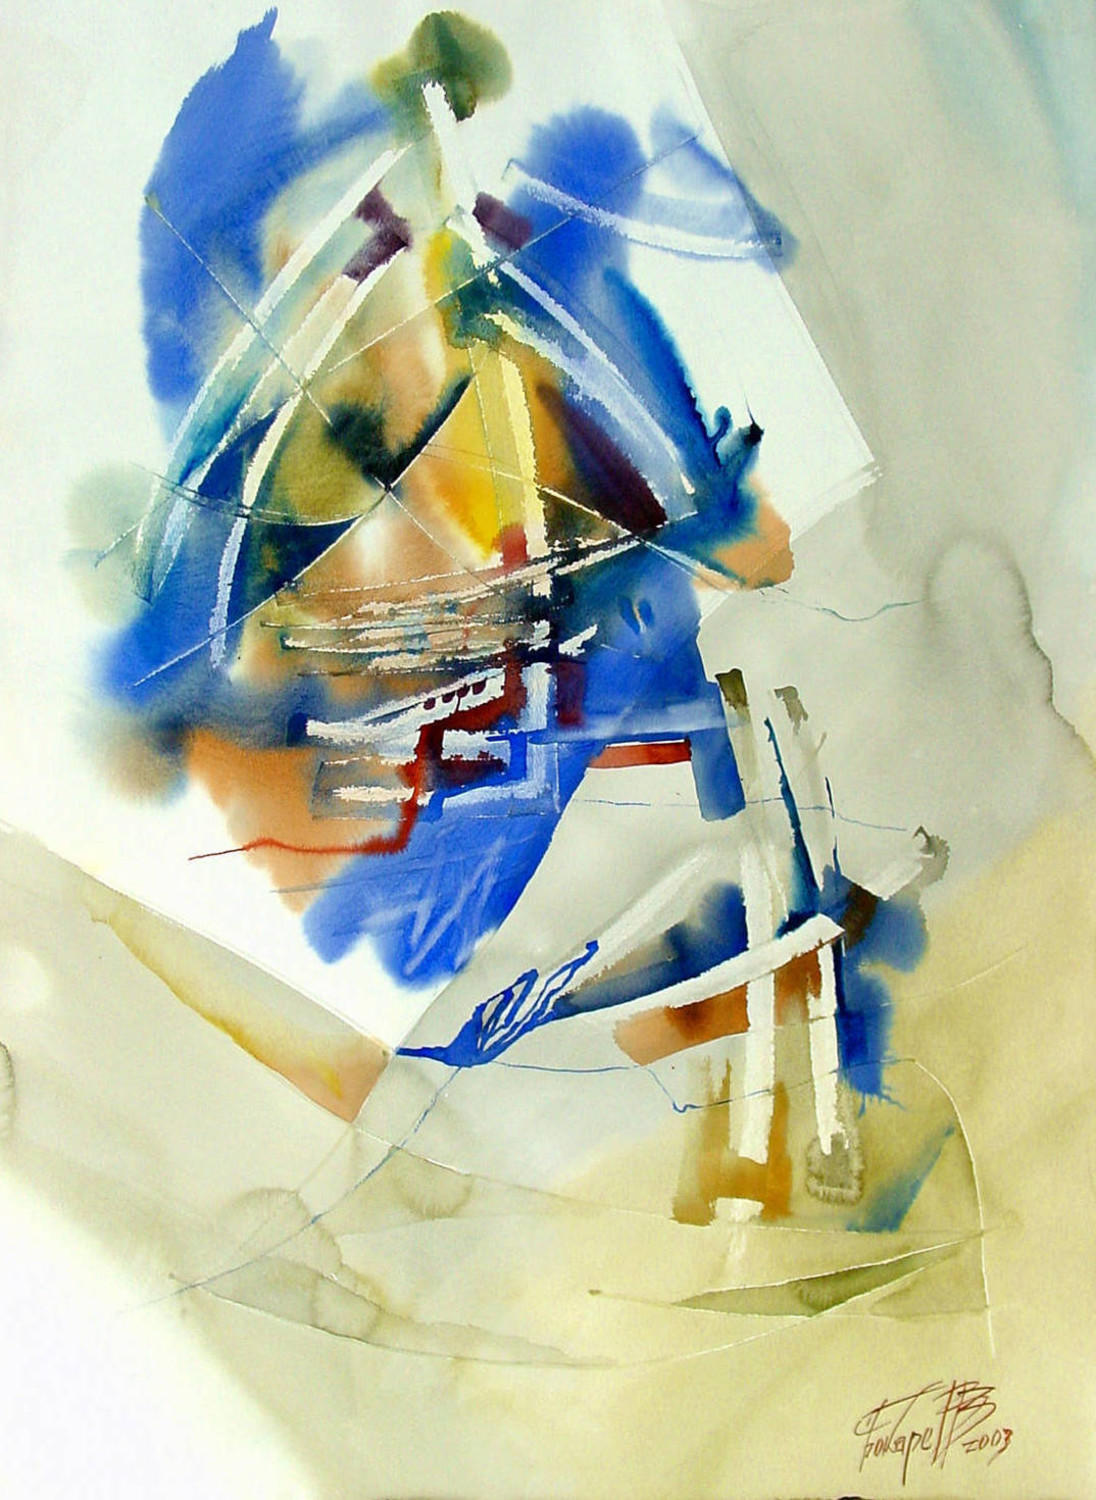 Знаки (Абстракция). Виктор Бокарев. 2003, бумага, акварель, 70x90